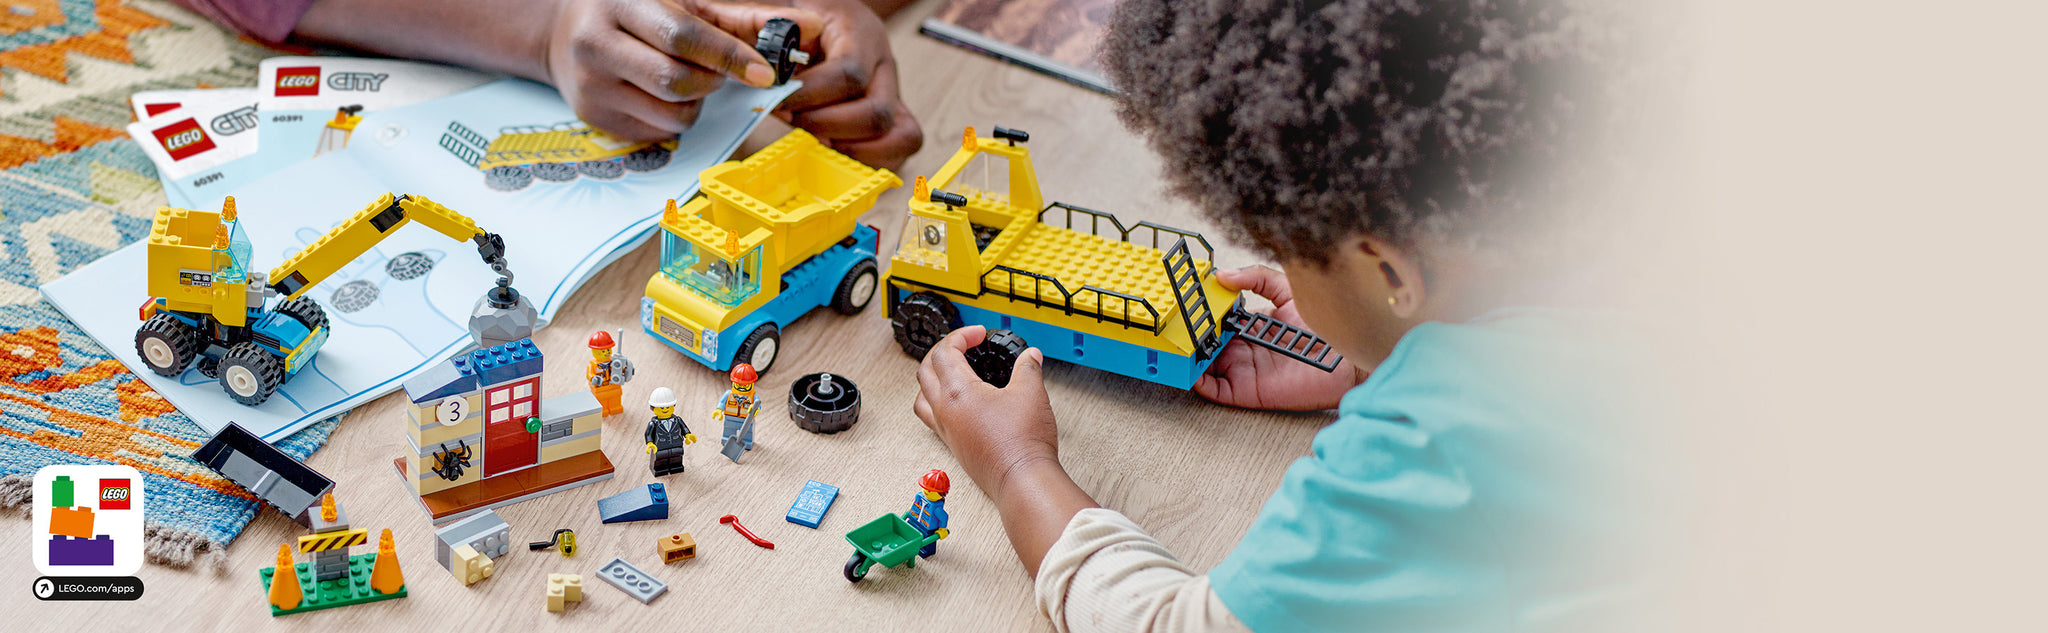 LEGO 60391 Kiepwagen, bouwtruck en sloopkraan